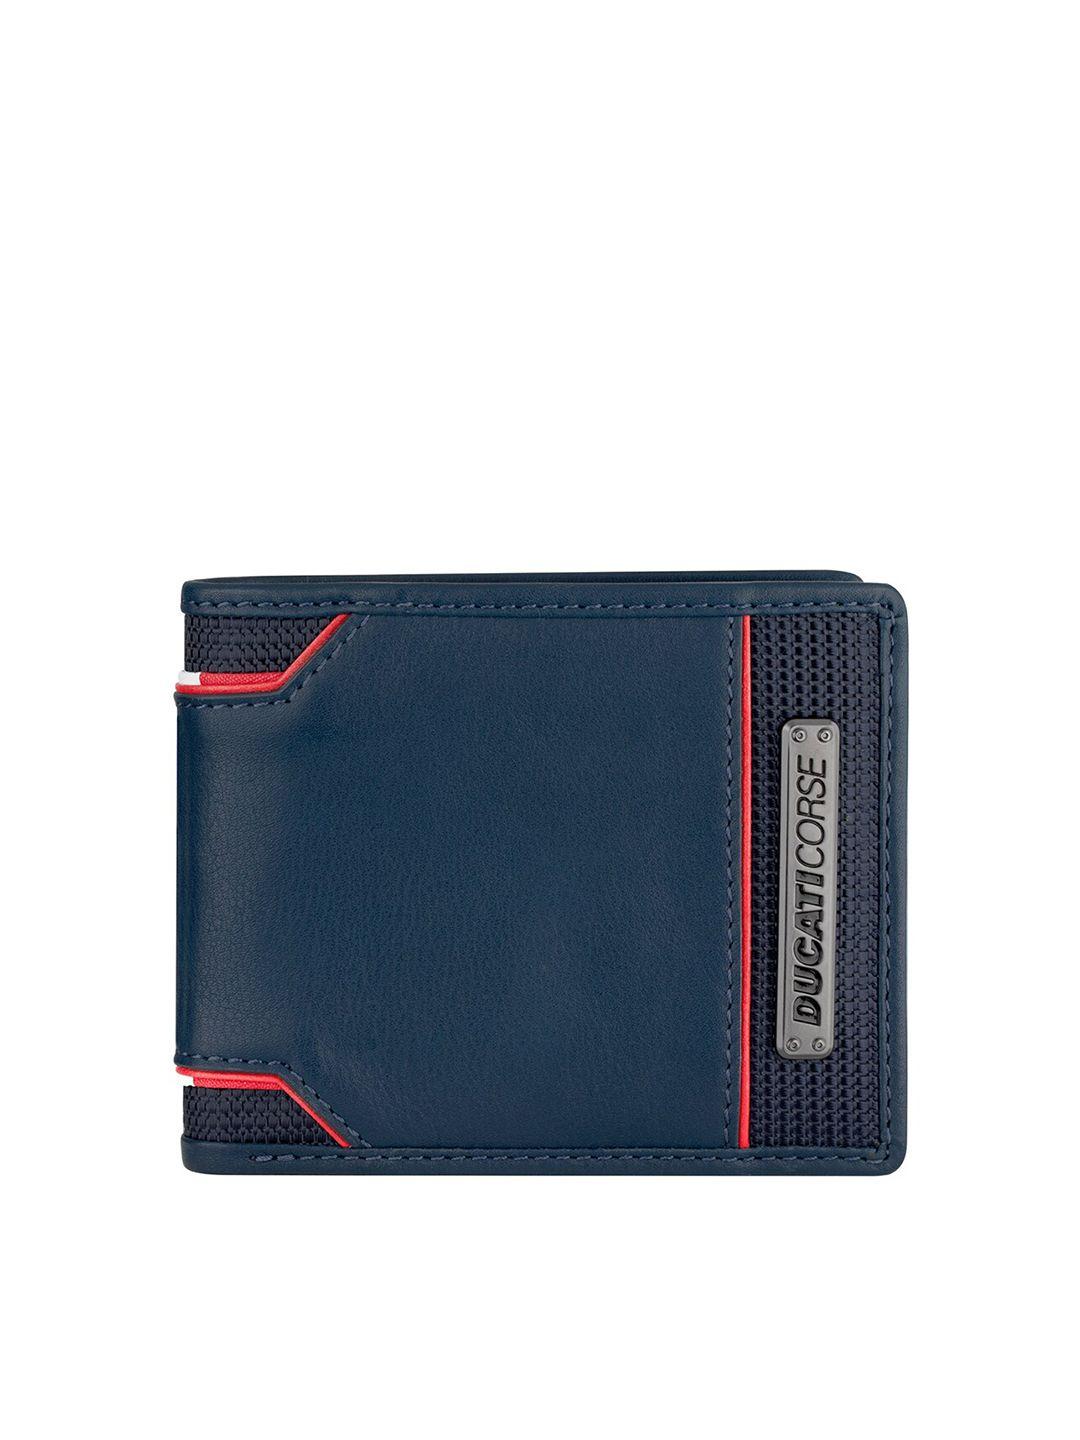 ducati corse men leather two fold wallet